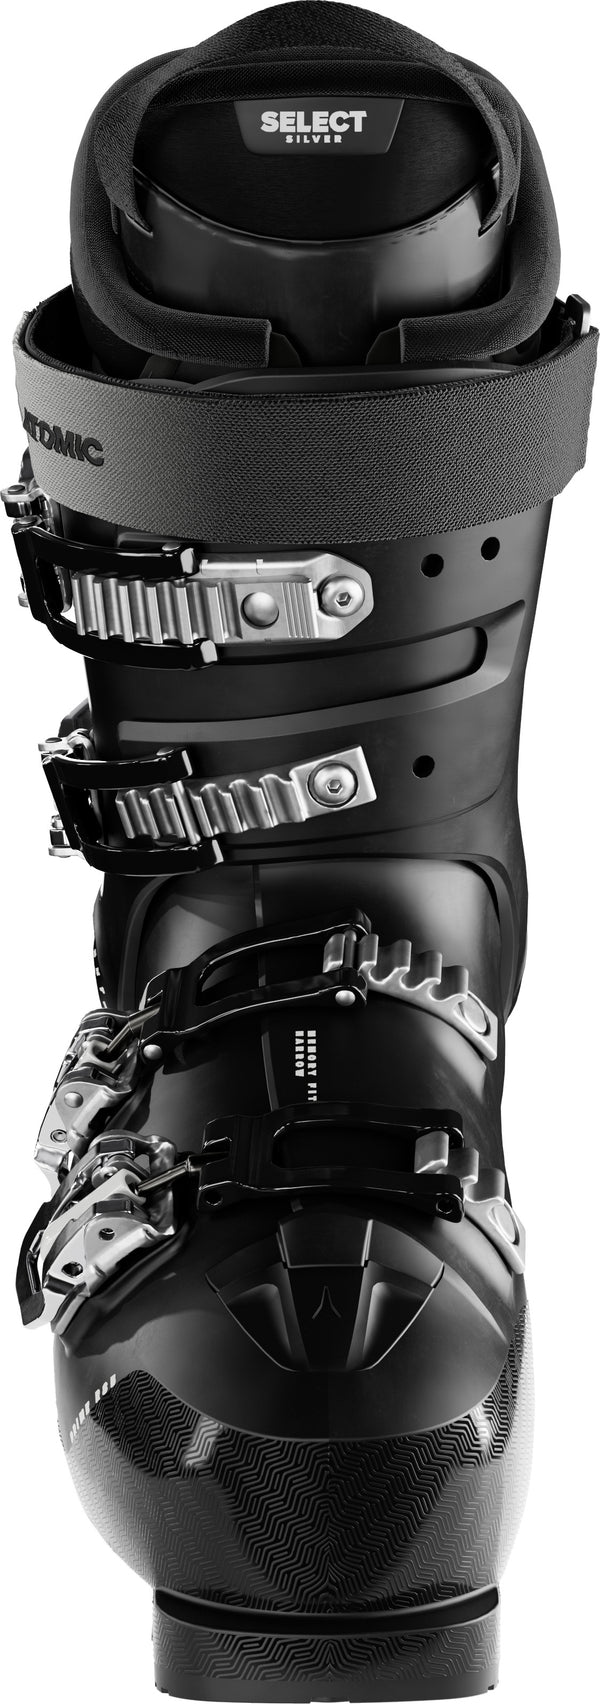 Atomic HAWX PRIME R 85 W GW - Chaussures de ski Femme - Neuf déstockage